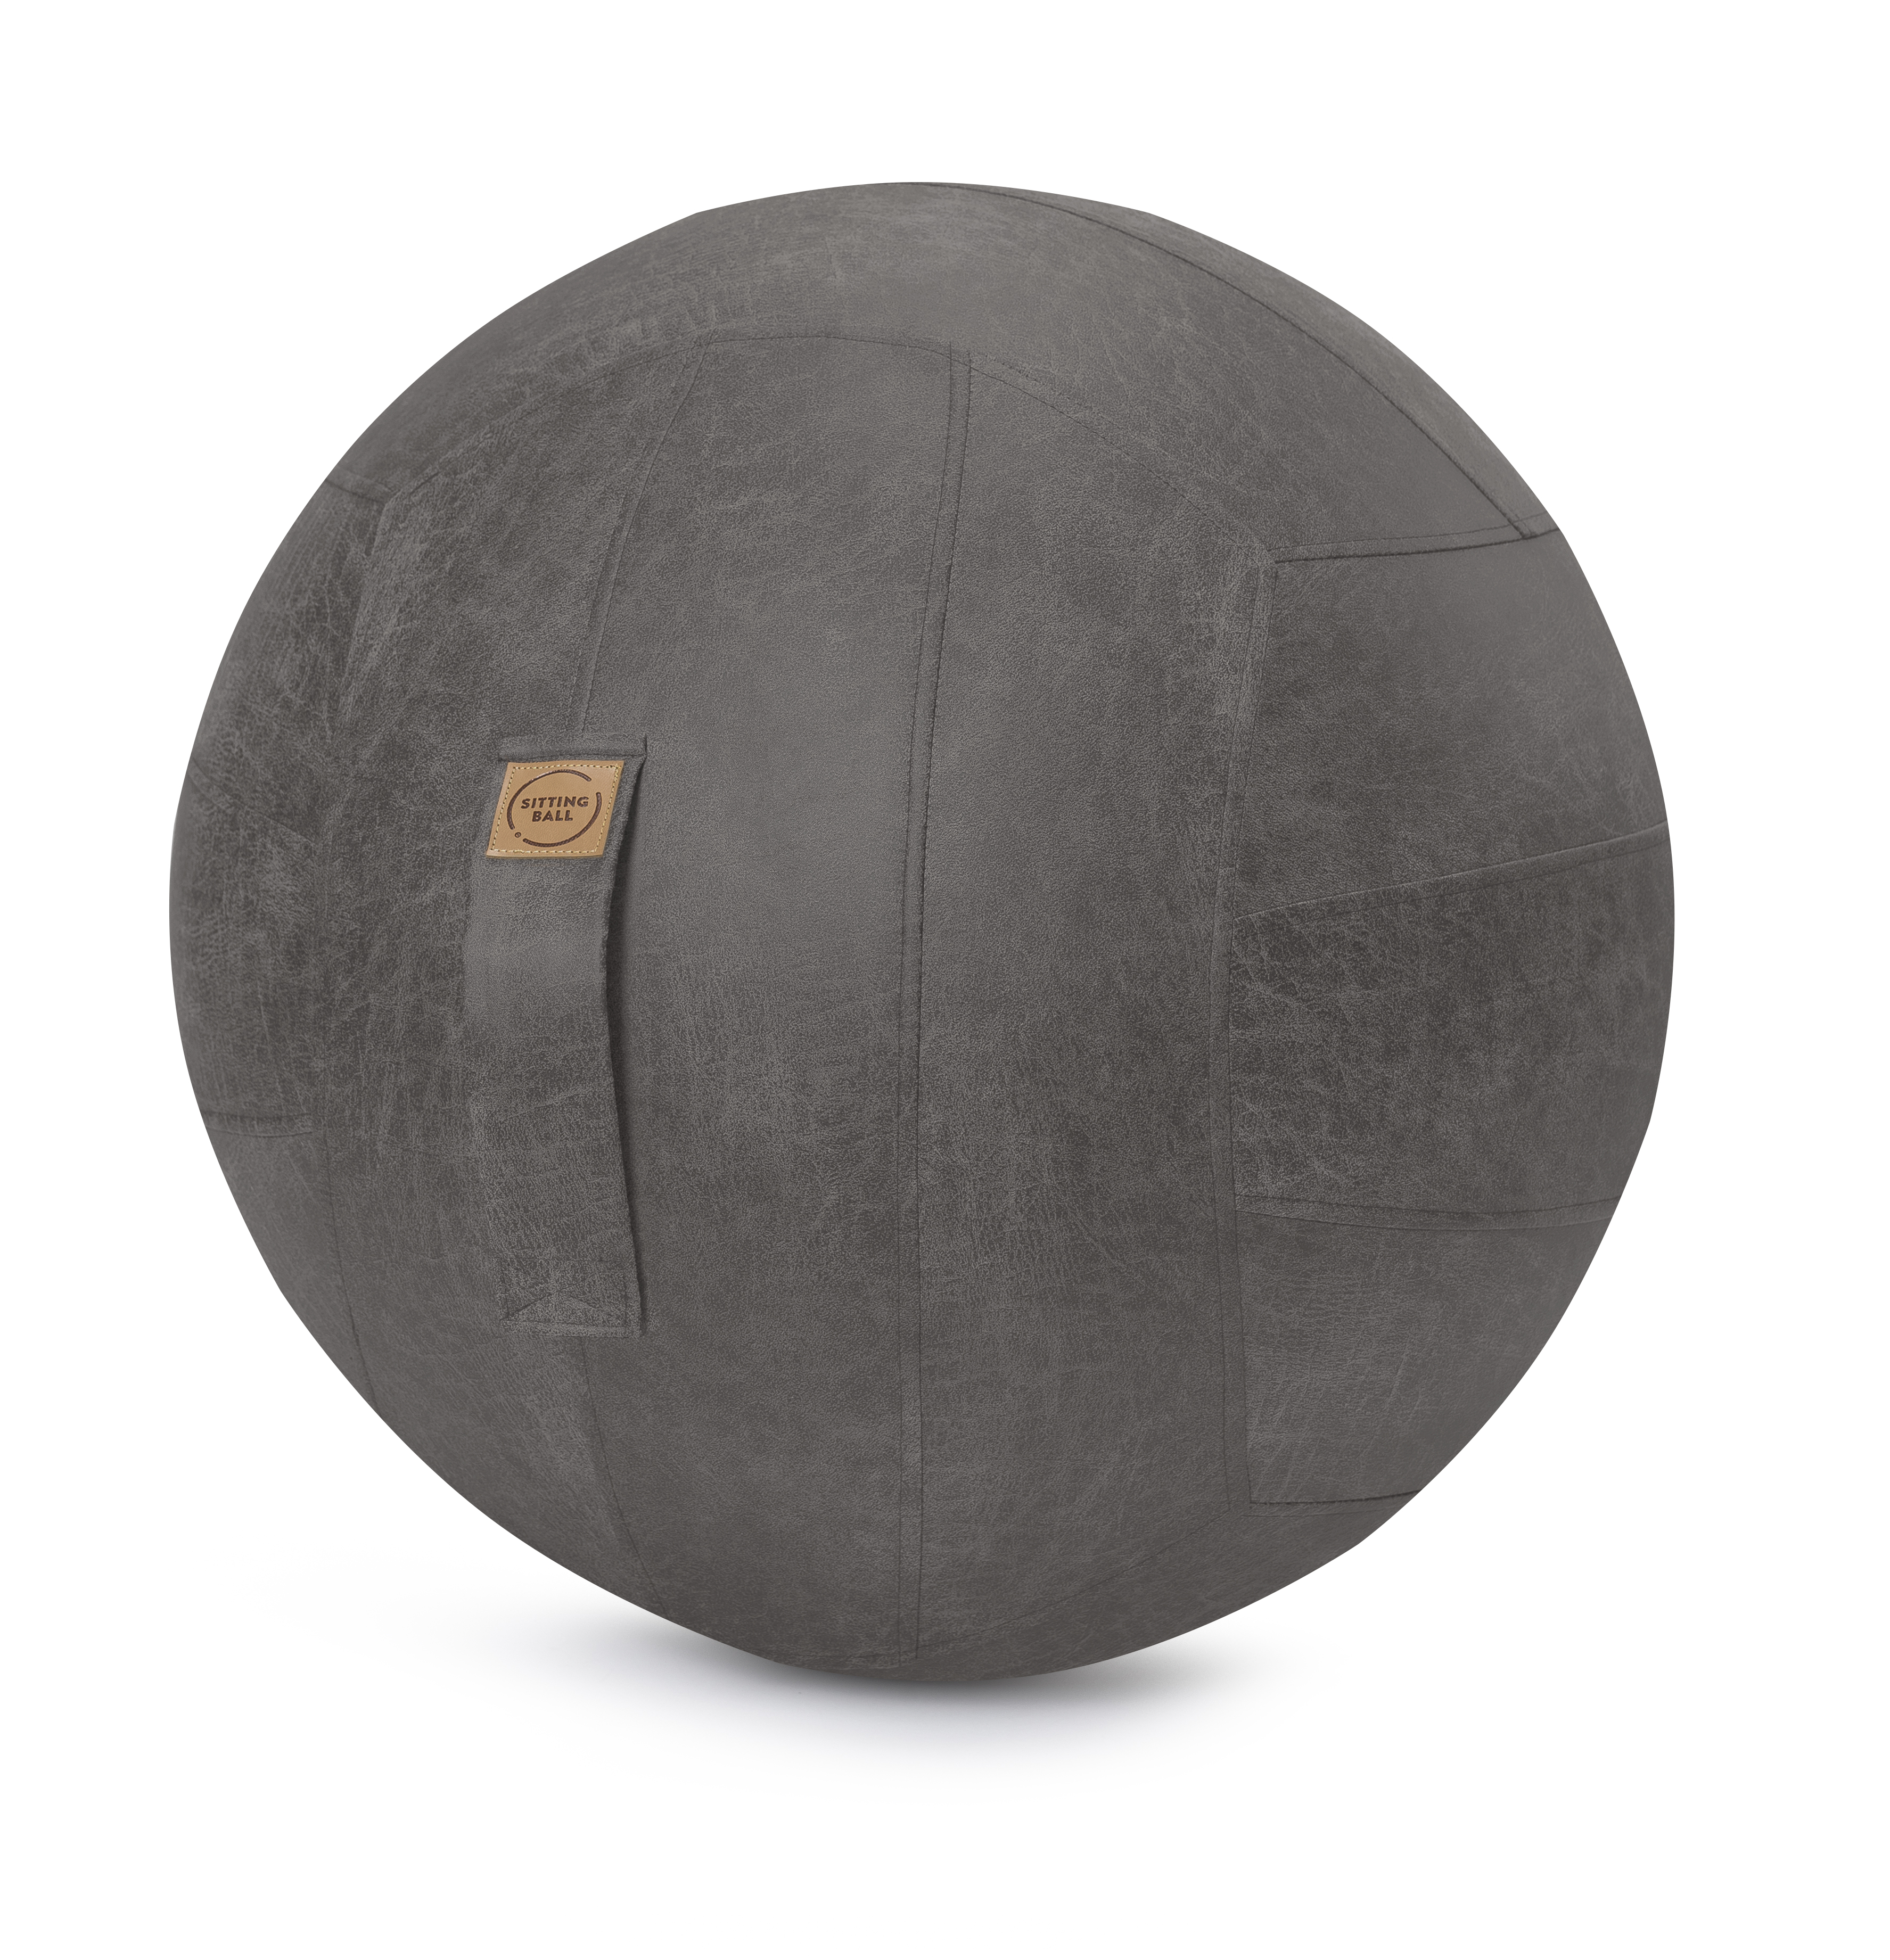 Balle d'assise design simili cuir anthracite avec poignÃ©e D65